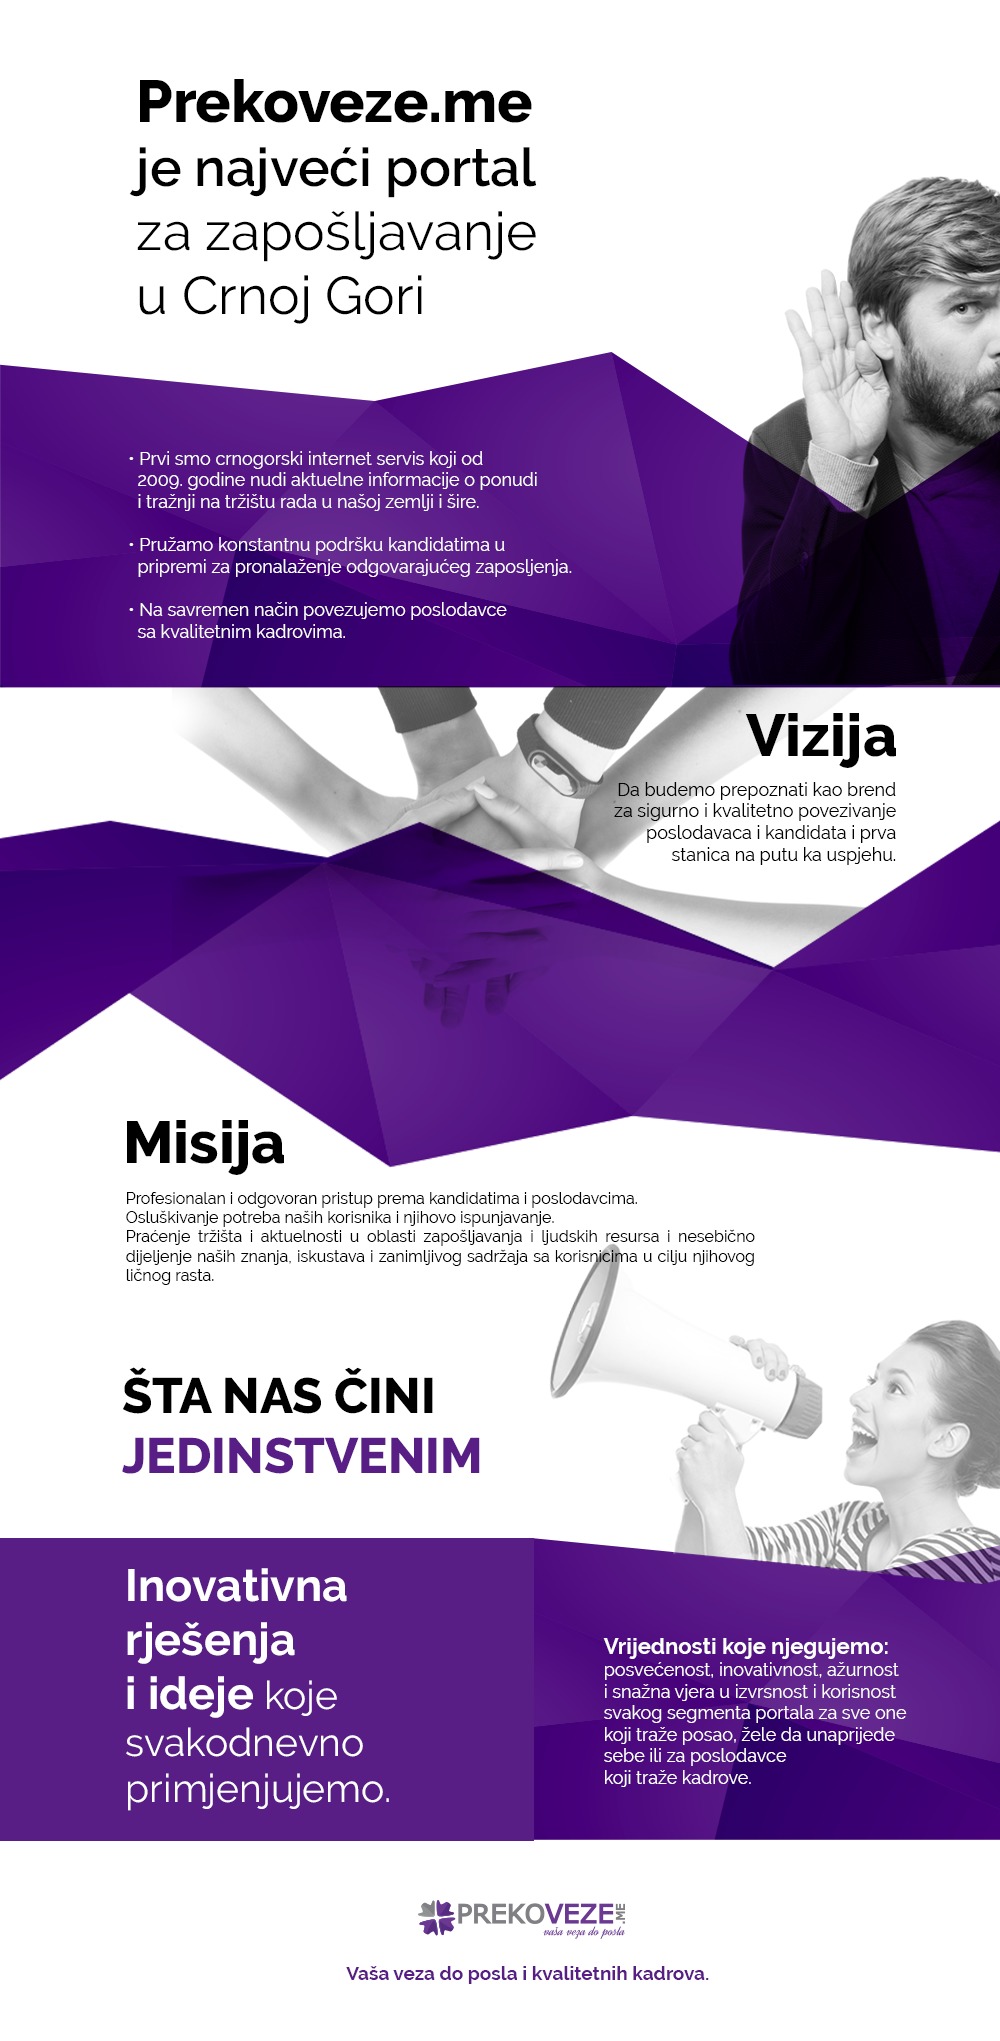 Prekoveze.me je najveći portal za zapošljavanje u Crnoj Gori